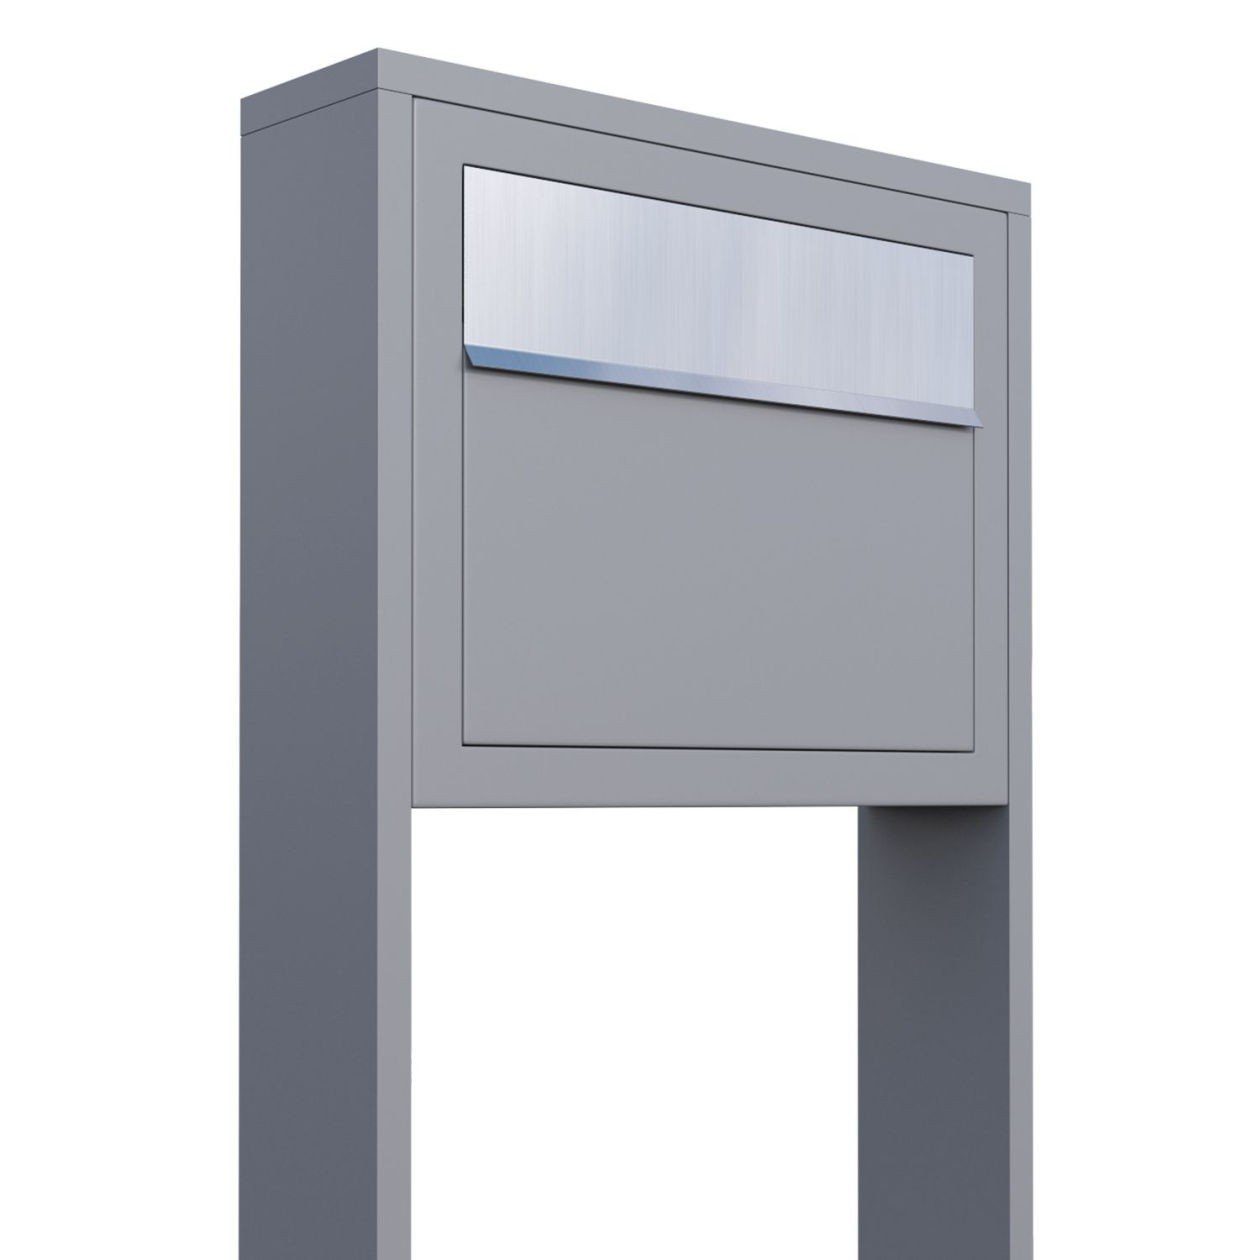 Bravios Briefkasten Standbriefkasten Elegance Grau mit Metallic Edels